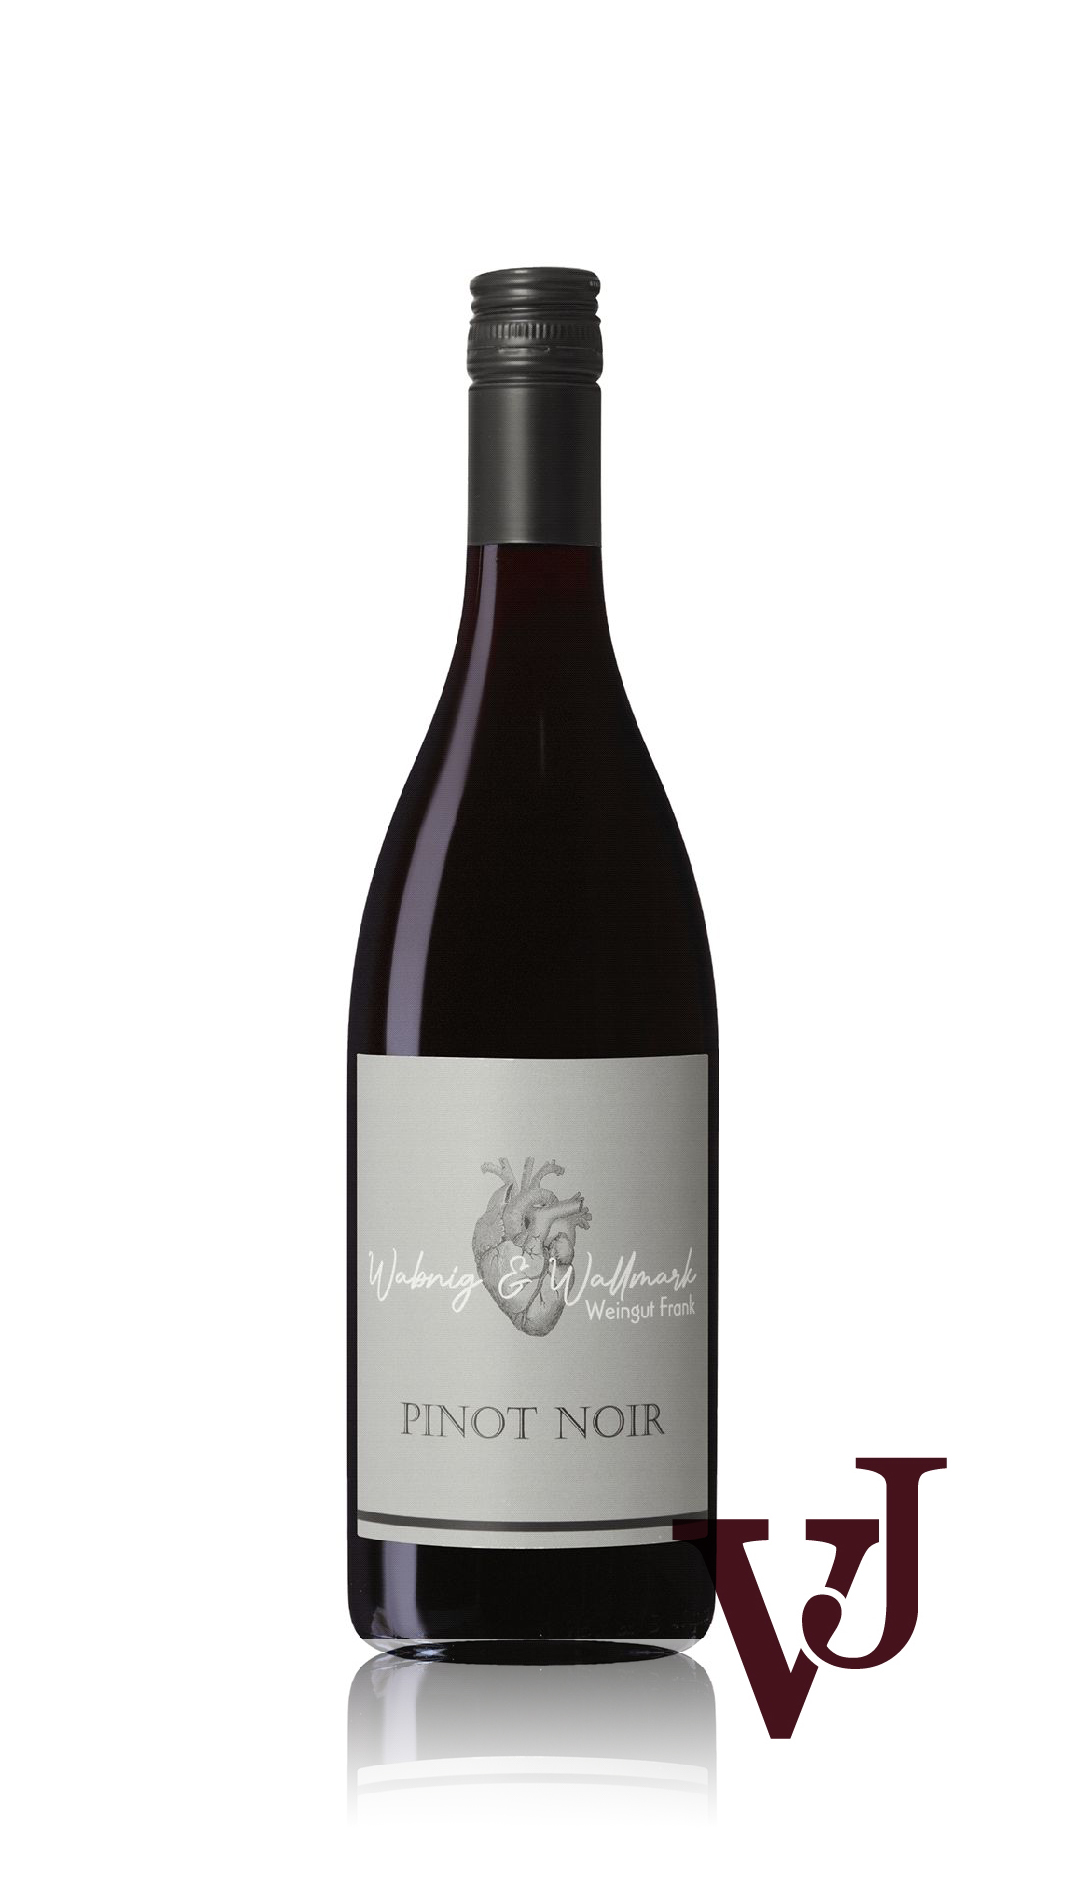 Rött Vin - Wabnig & Wallmark Pinot Noir 2021 artikel nummer 5178101 från producenten Weingut Frank från området Österrike